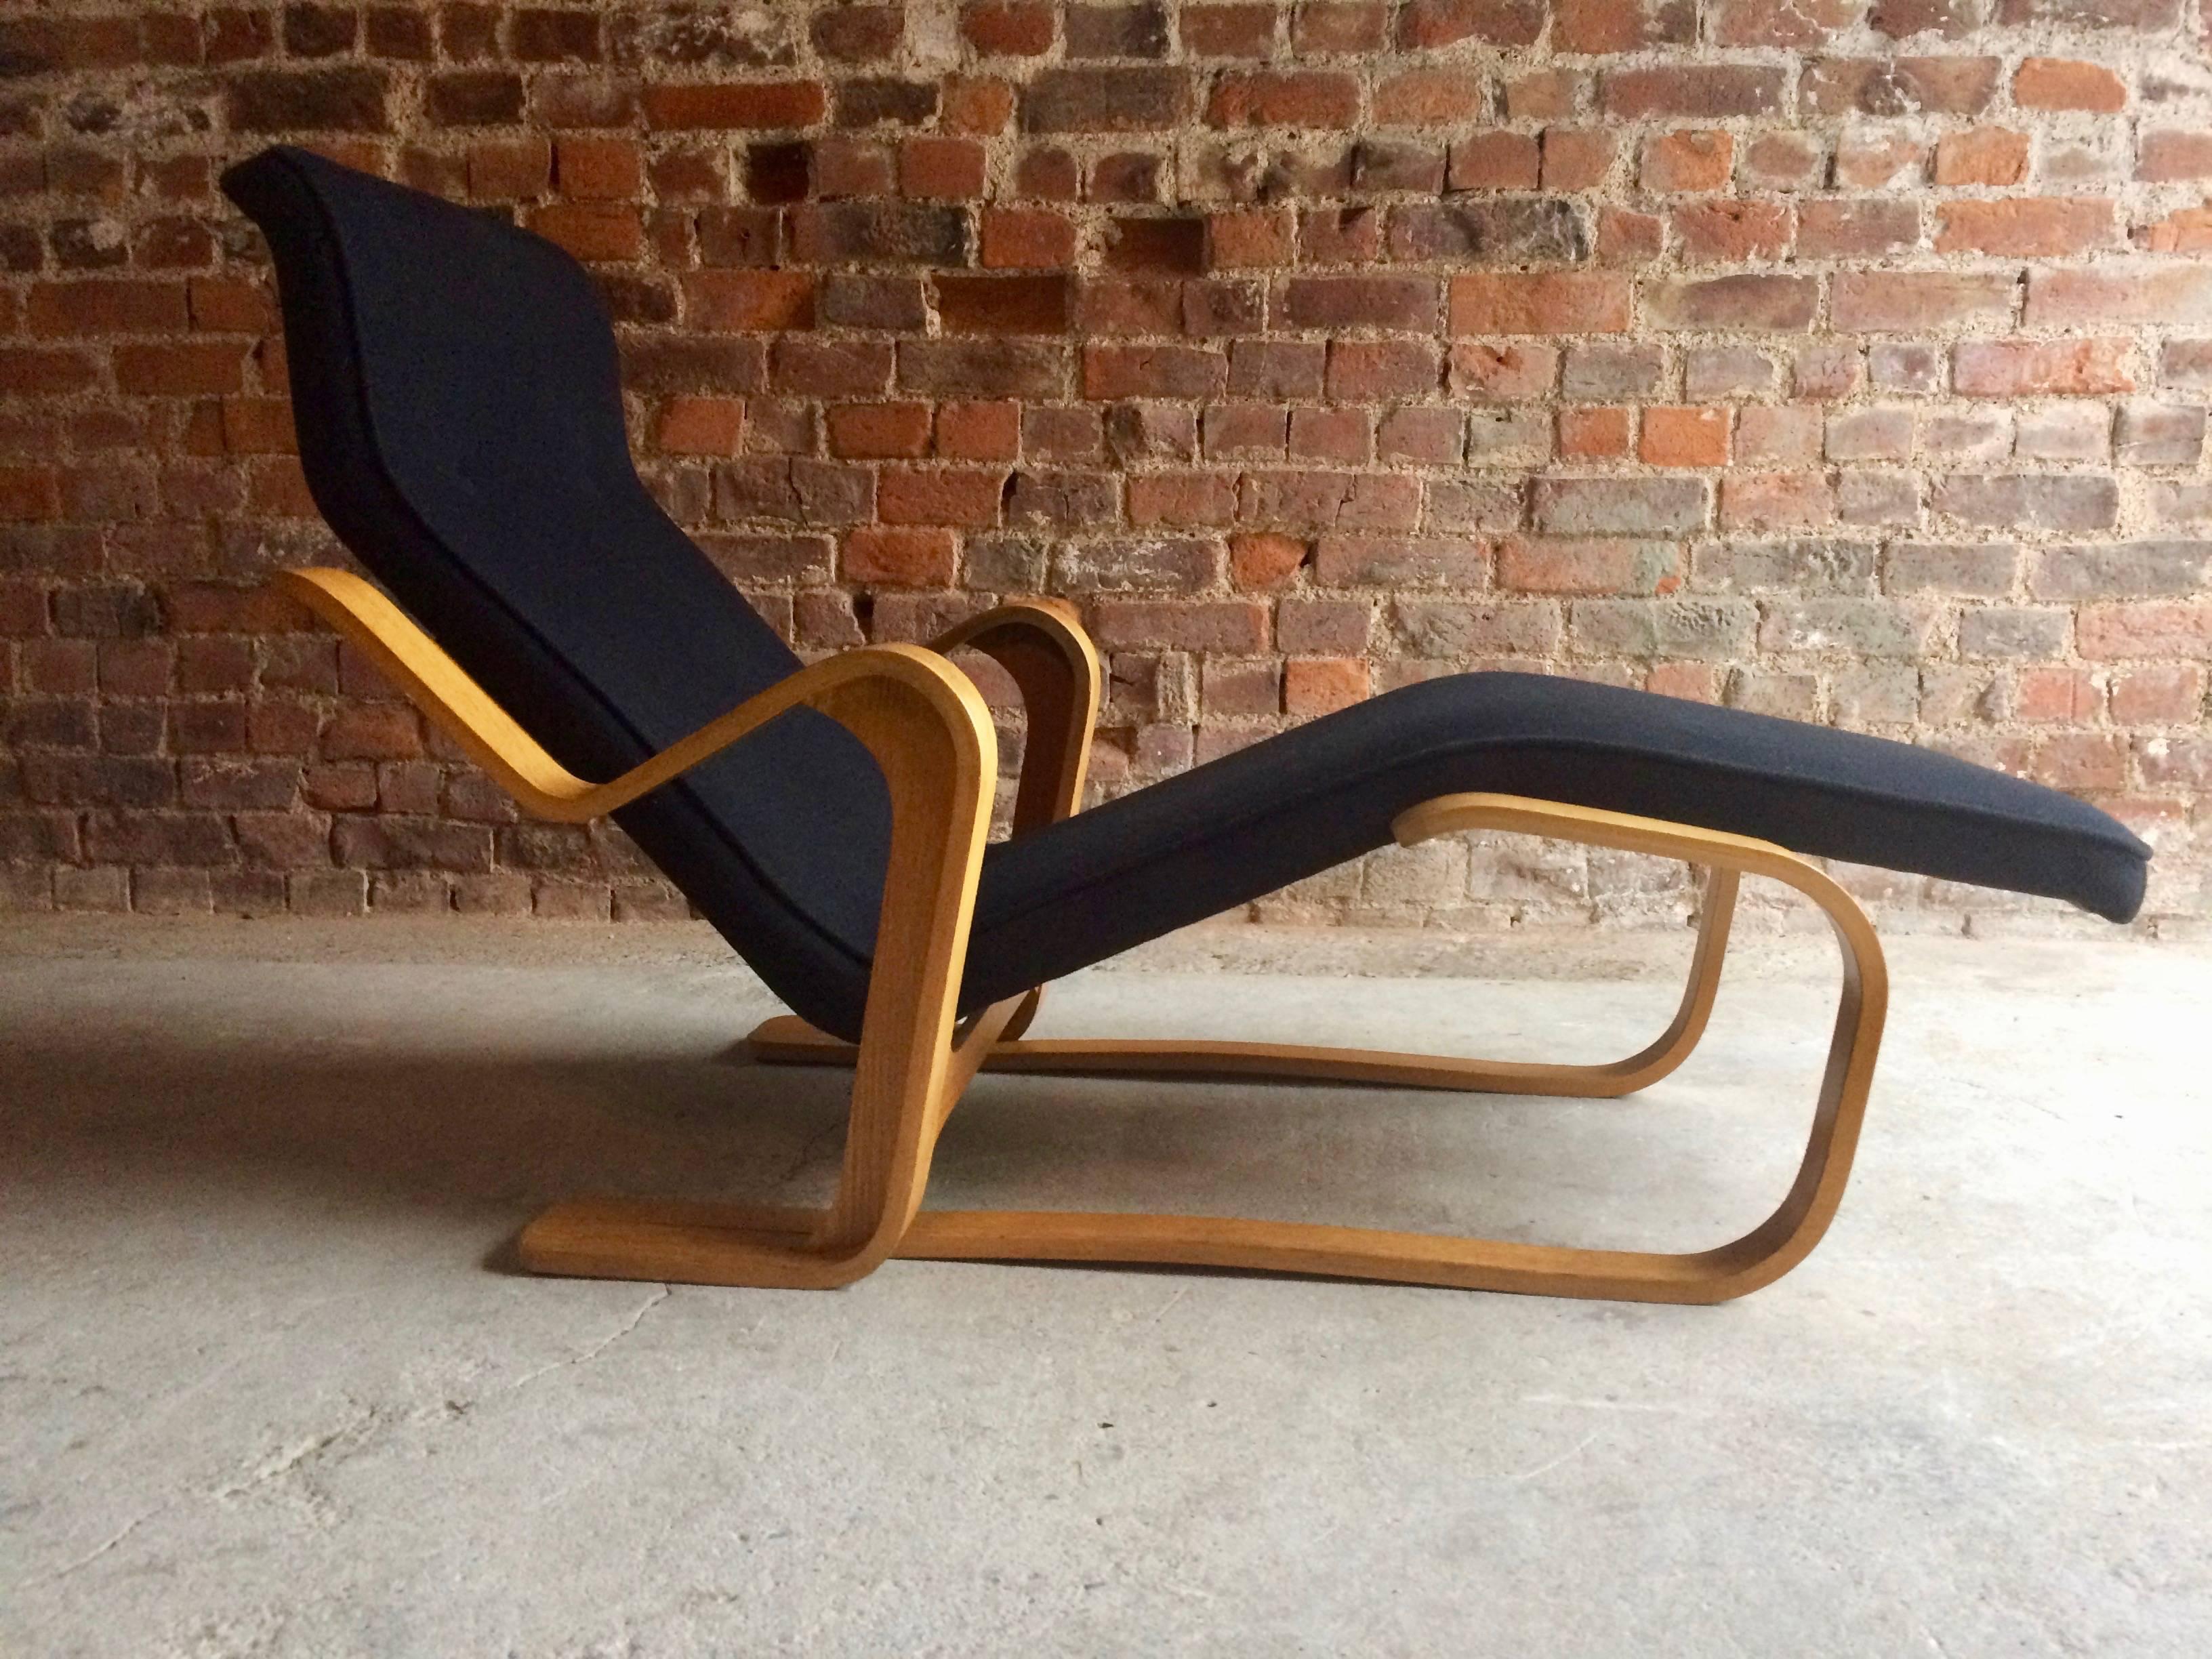 Marcel Breuer Long Chair Chaise Longue Black Midcentury 1970s Bauhaus No. 3 2